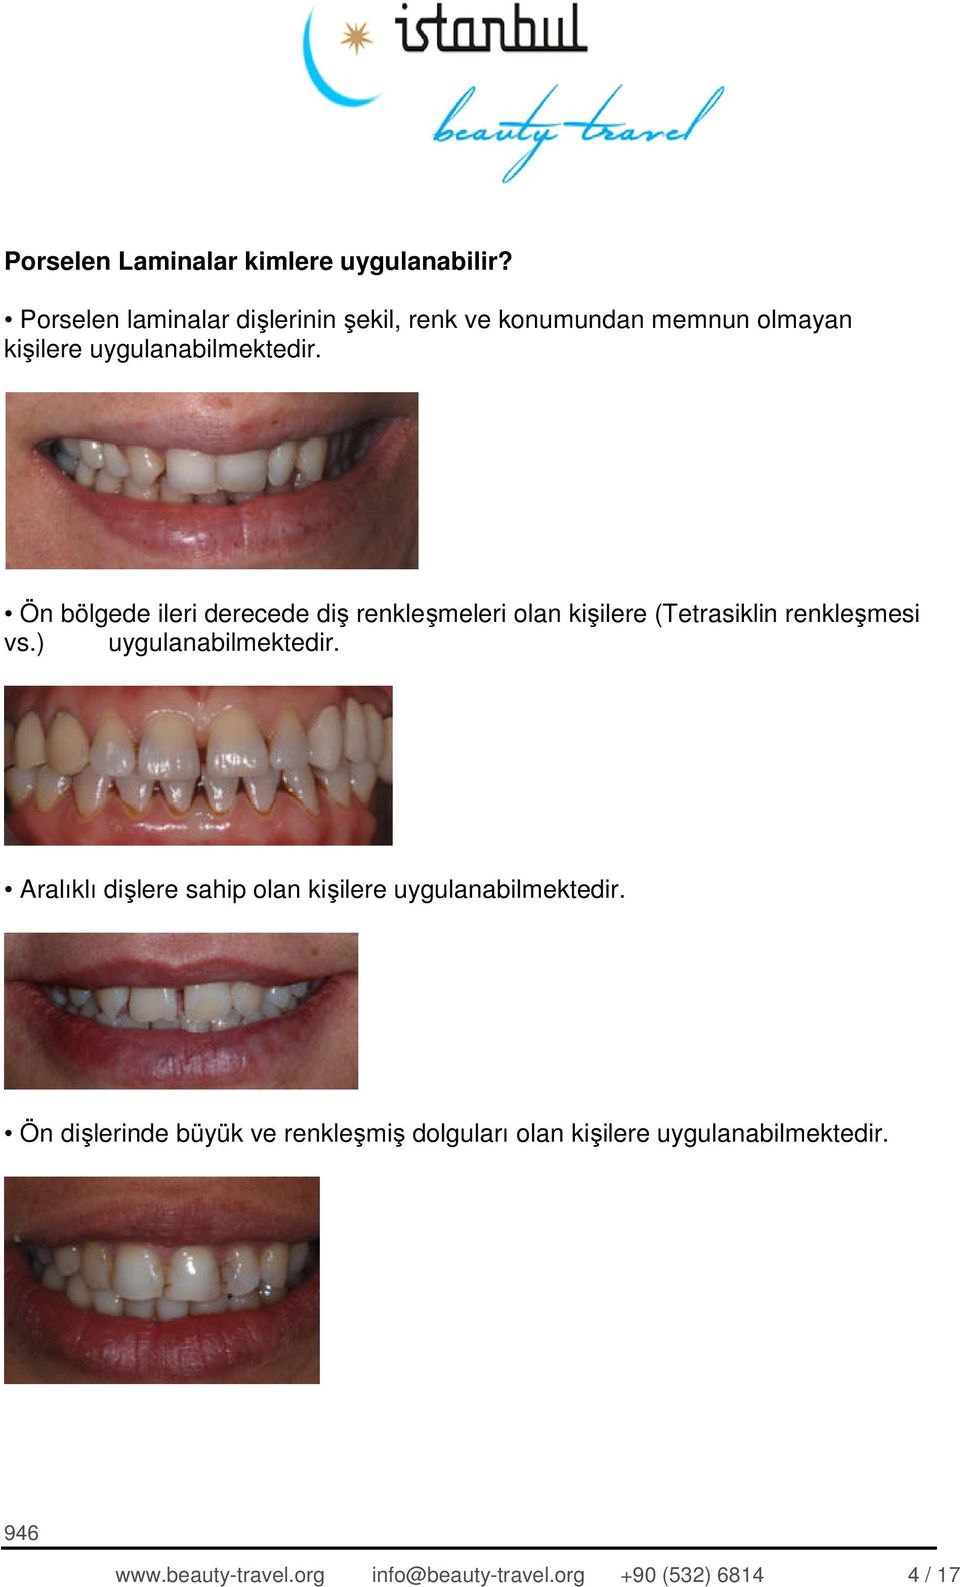 Ön bölgede ileri derecede diş renkleşmeleri olan kişilere (Tetrasiklin renkleşmesi vs.) uygulanabilmektedir.